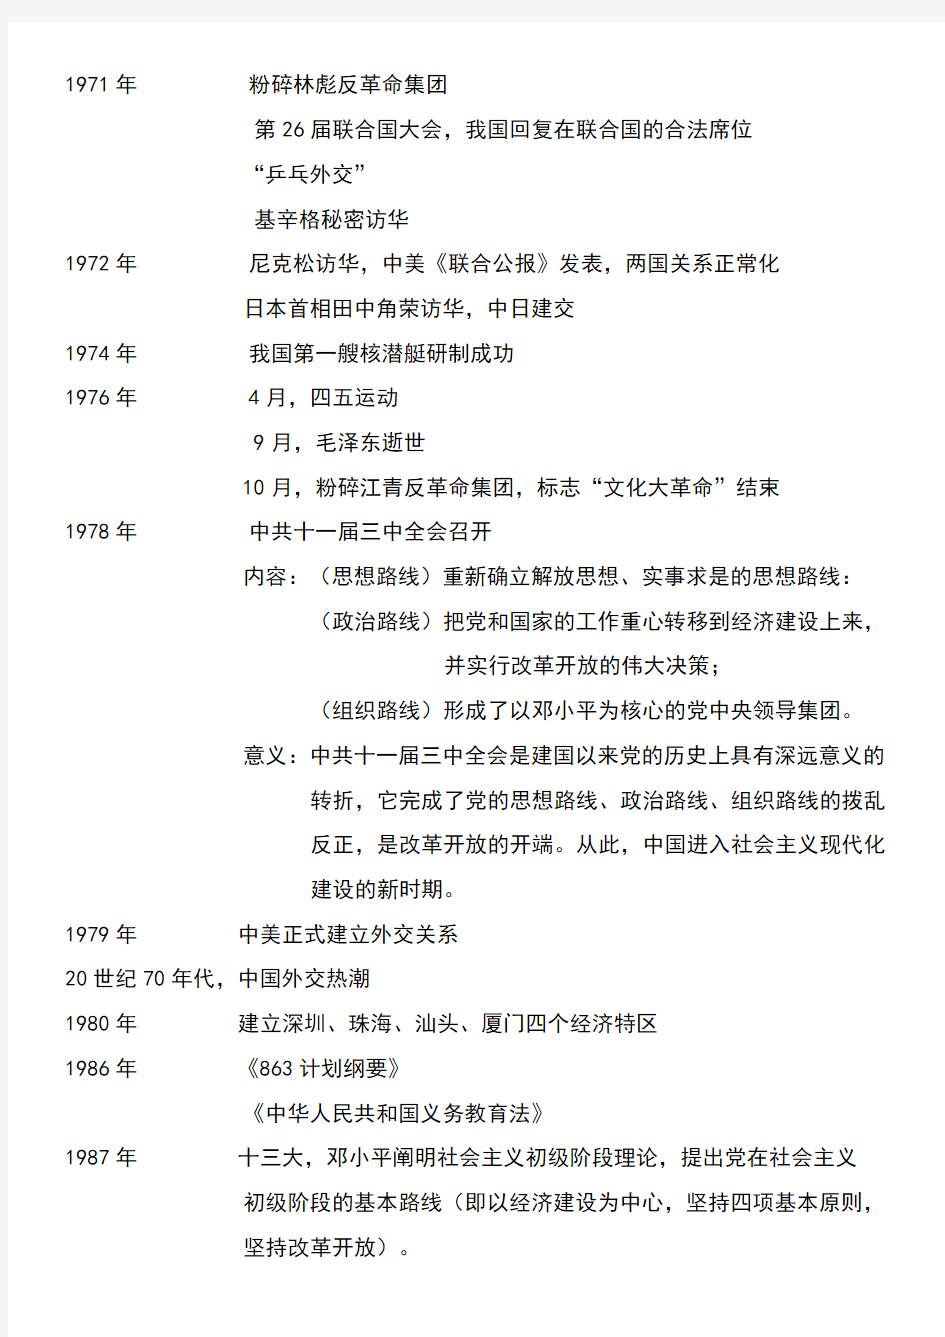 八年级历史下册复习资料——中国现代历史大事年表